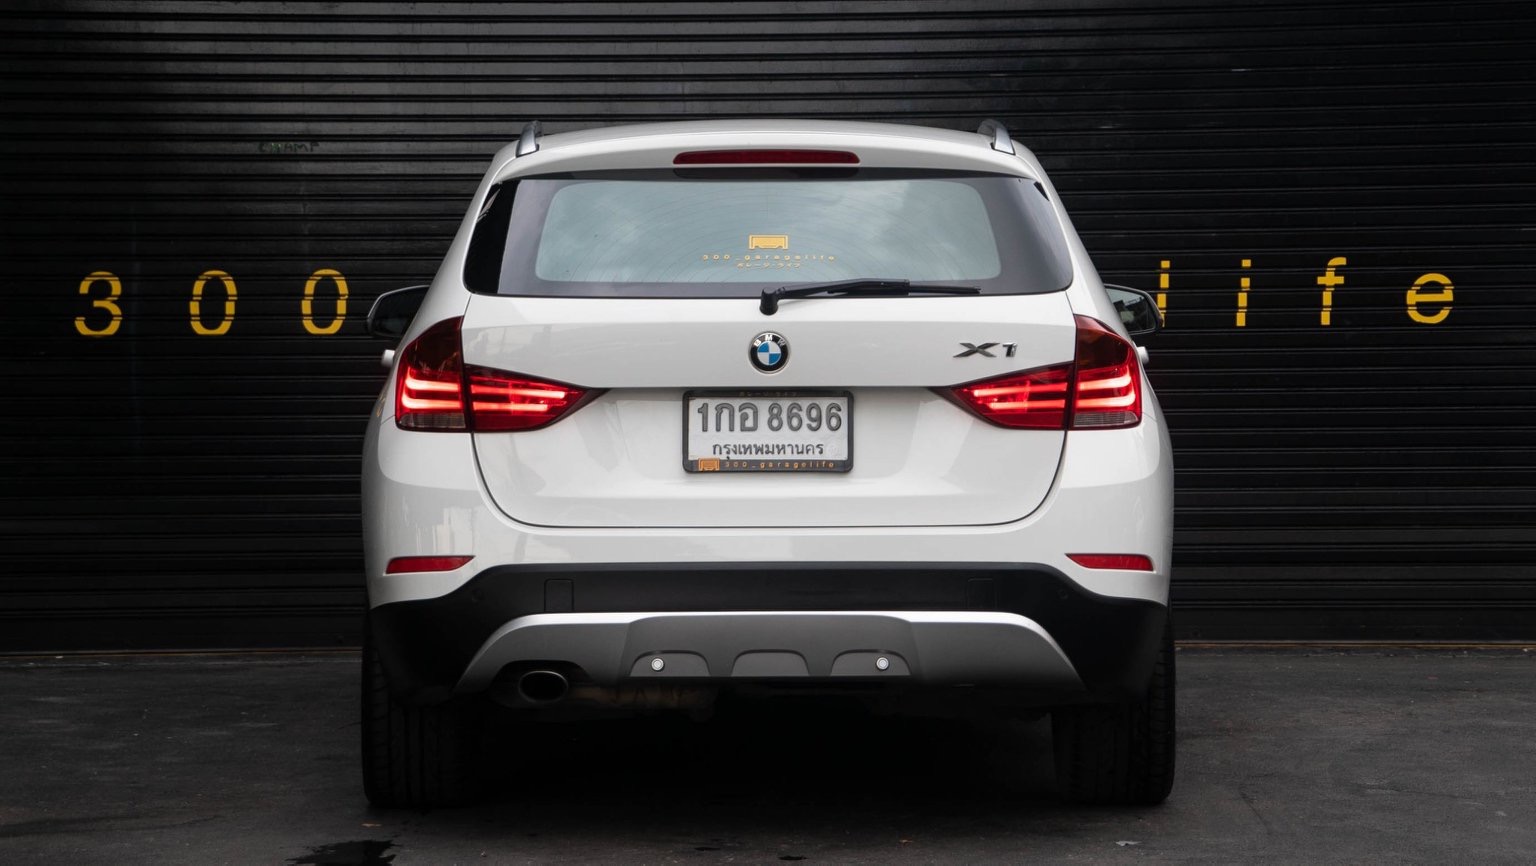 BMW X1 E84 ปี 2013 สีขาว